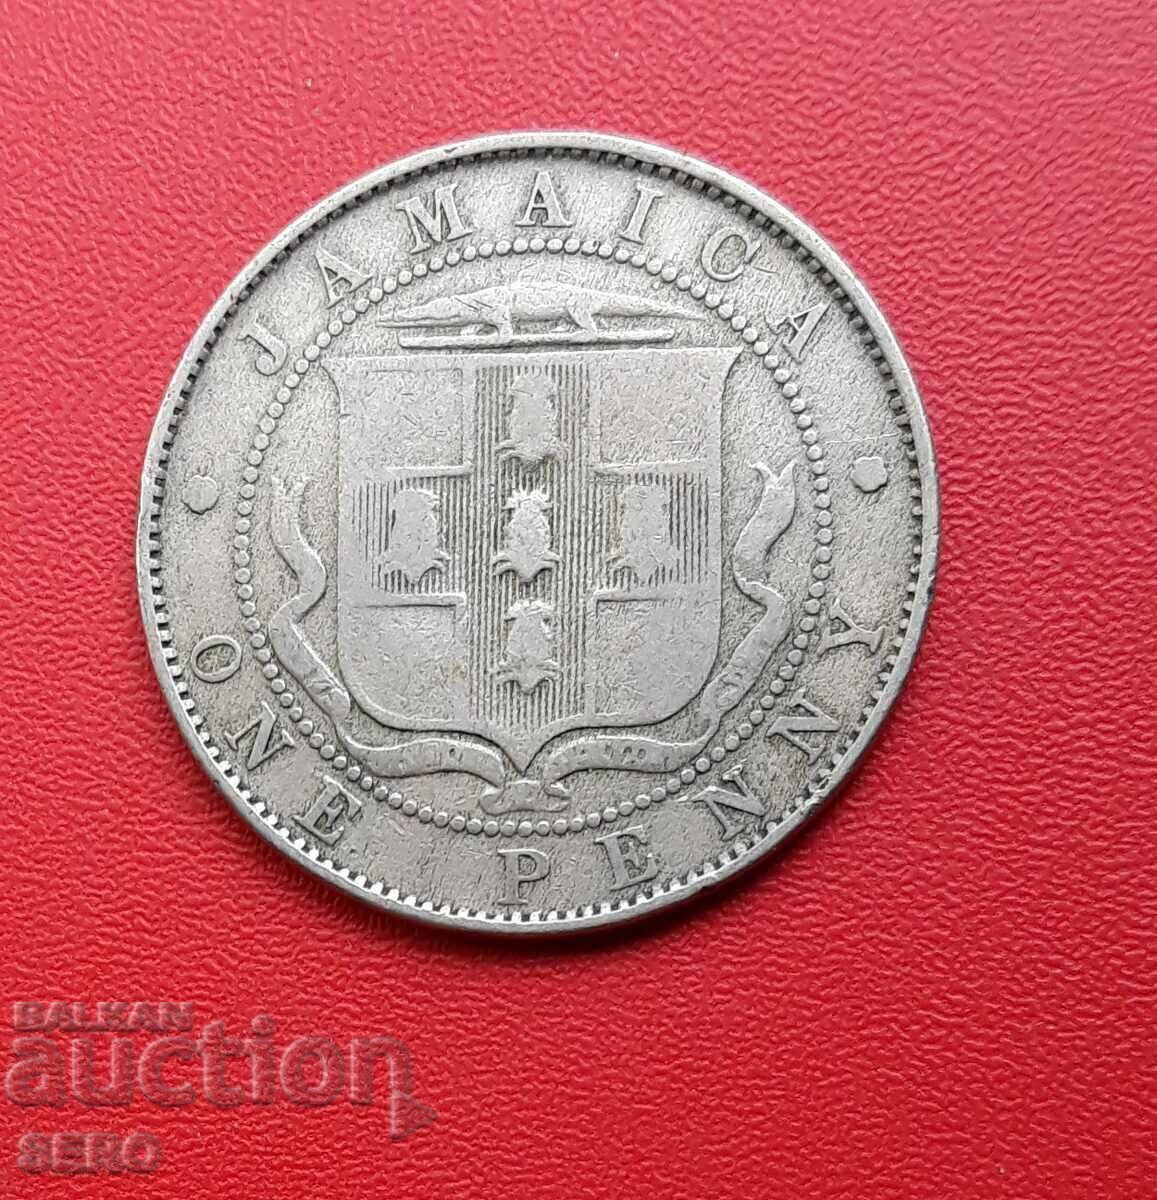 Island of Jamaica-1 penny 1928-rare